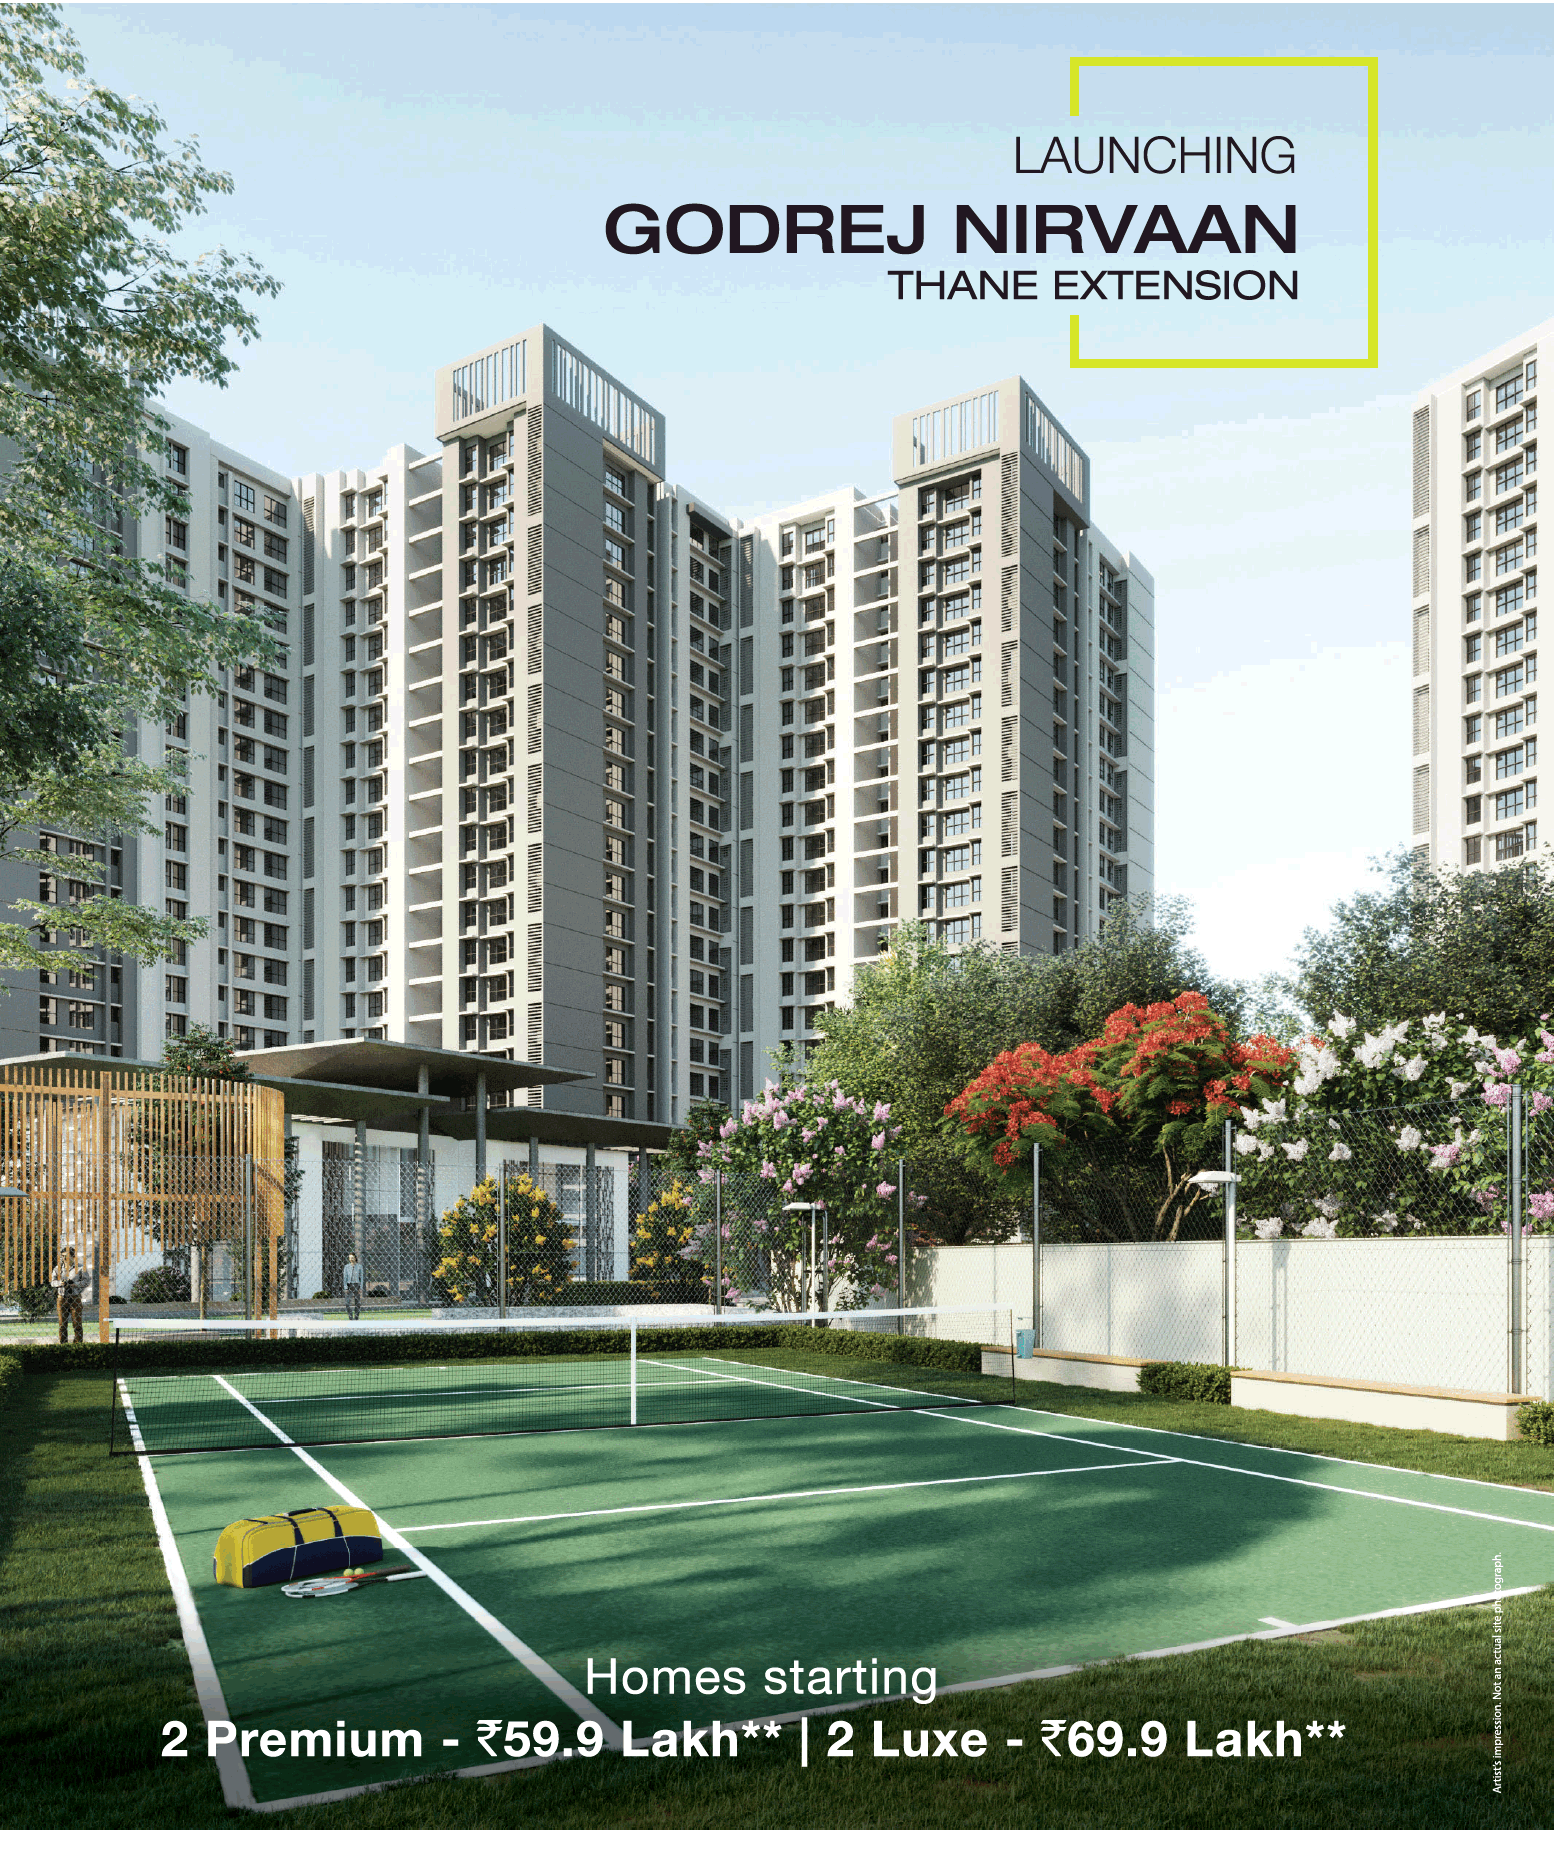 Book 2 BHK apartment at Rs 59 lakh at Godrej Nirvaan in Mumbai Update